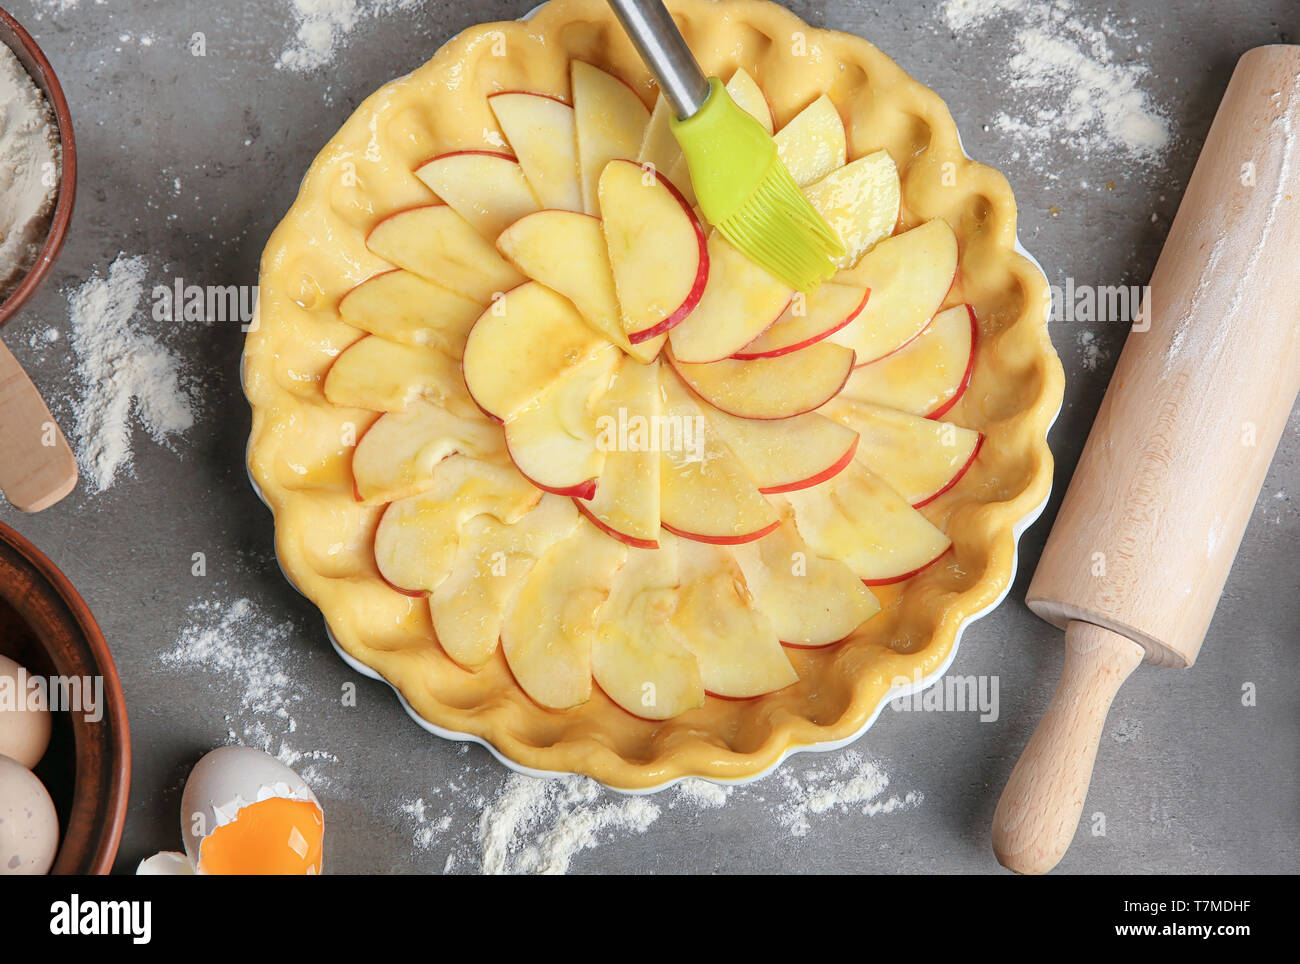 La préparation de tarte aux pommes sur la table Banque D'Images